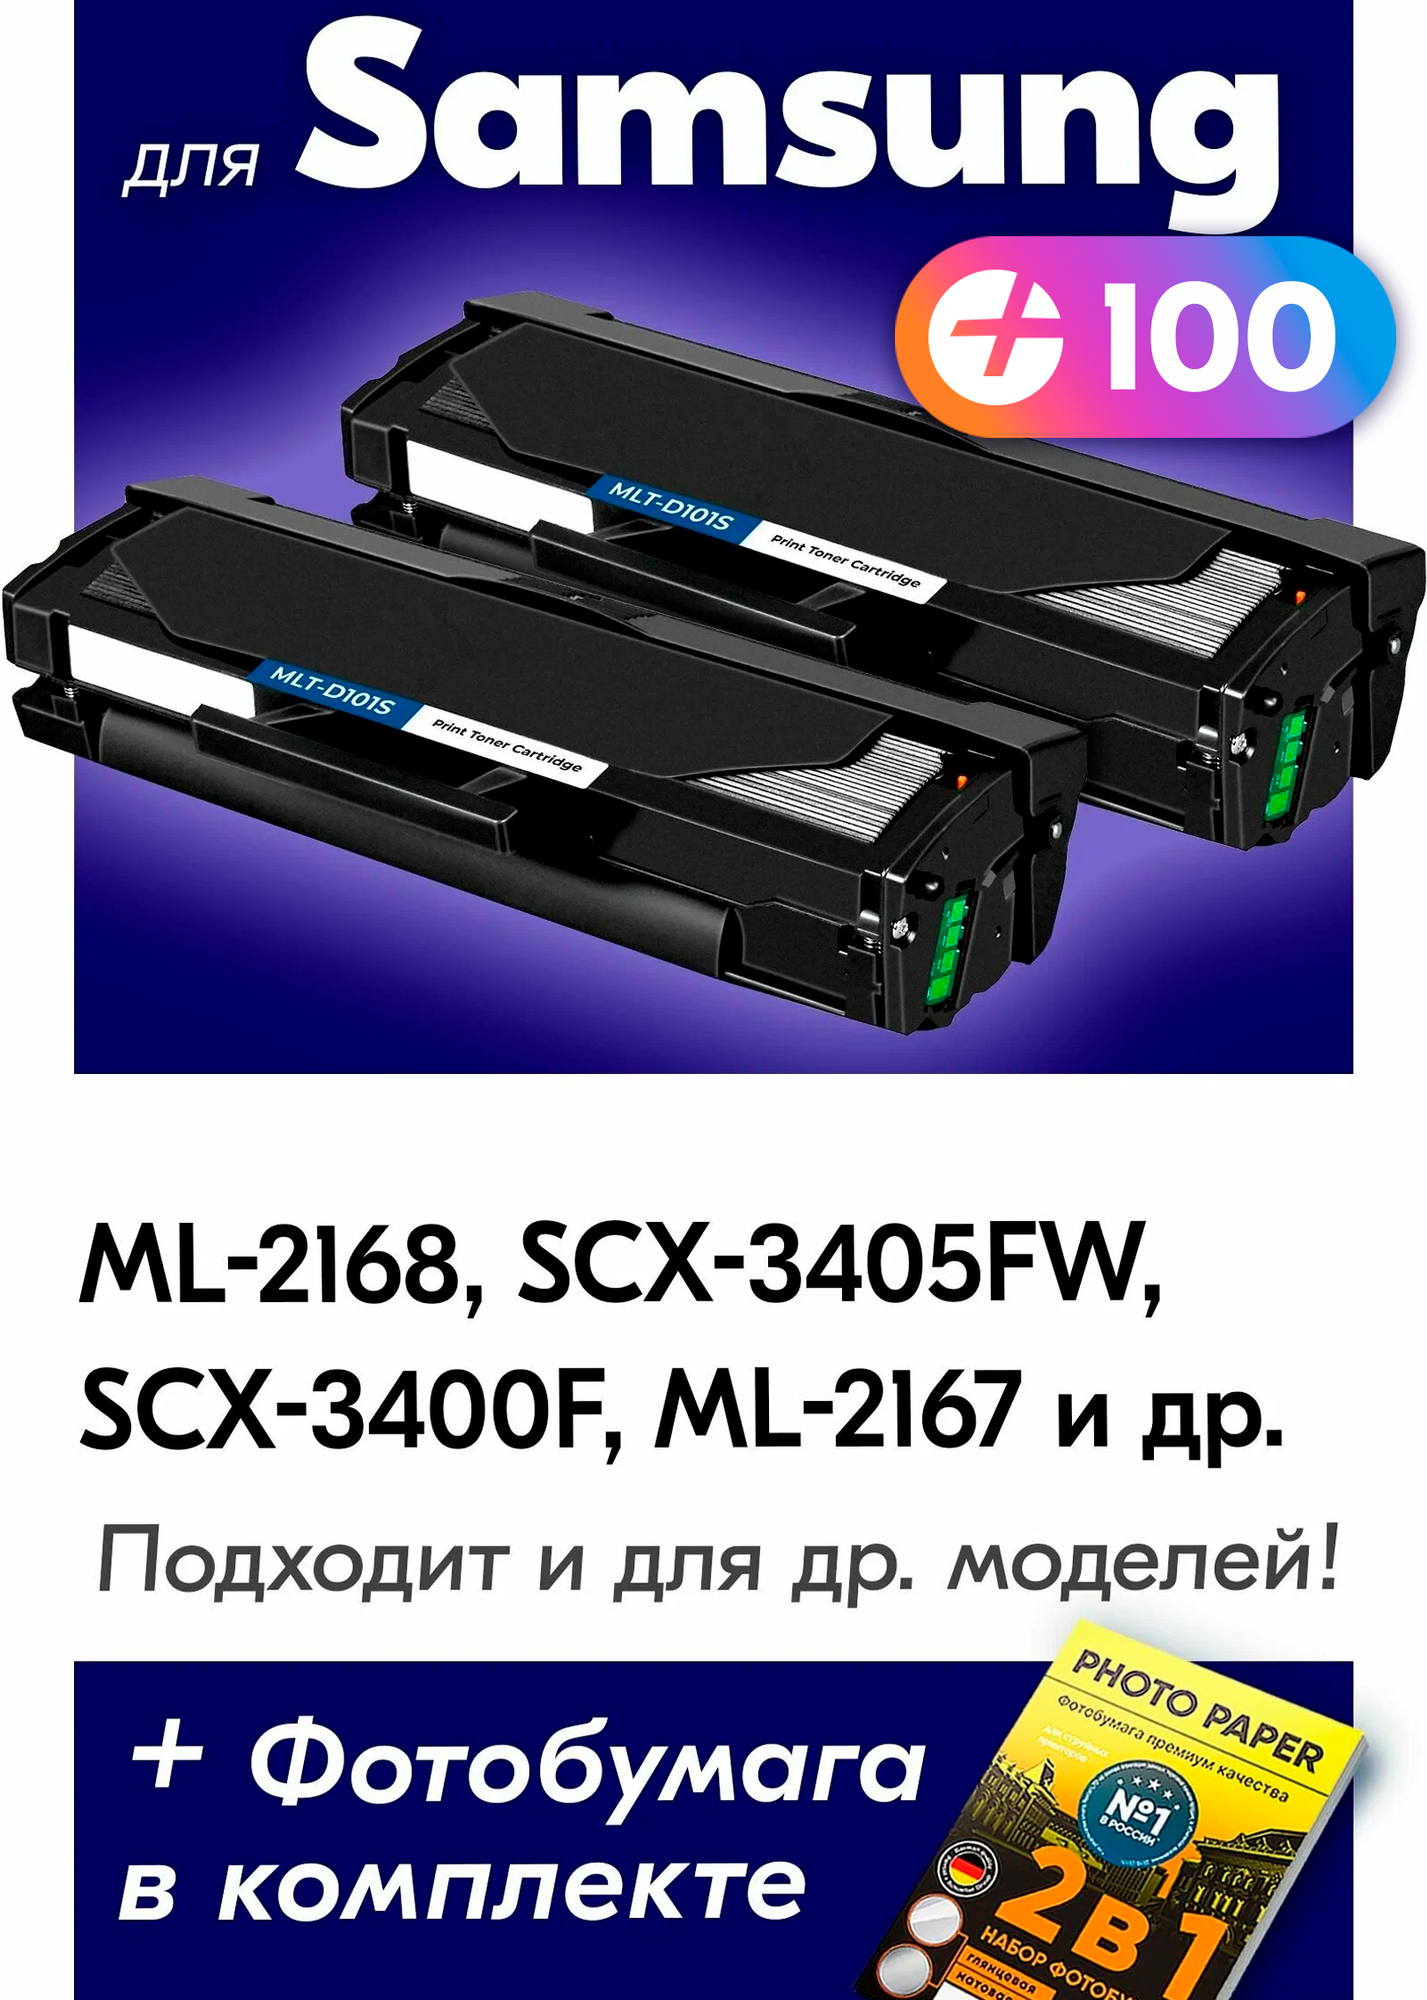 Лазерные картриджи для Samsung MLT-D101S, Samsung ML-2168, SCX-3405FW, SCX-3400F, ML-2167 с краской (тонером) черные новые заправляемые, 1500 копий